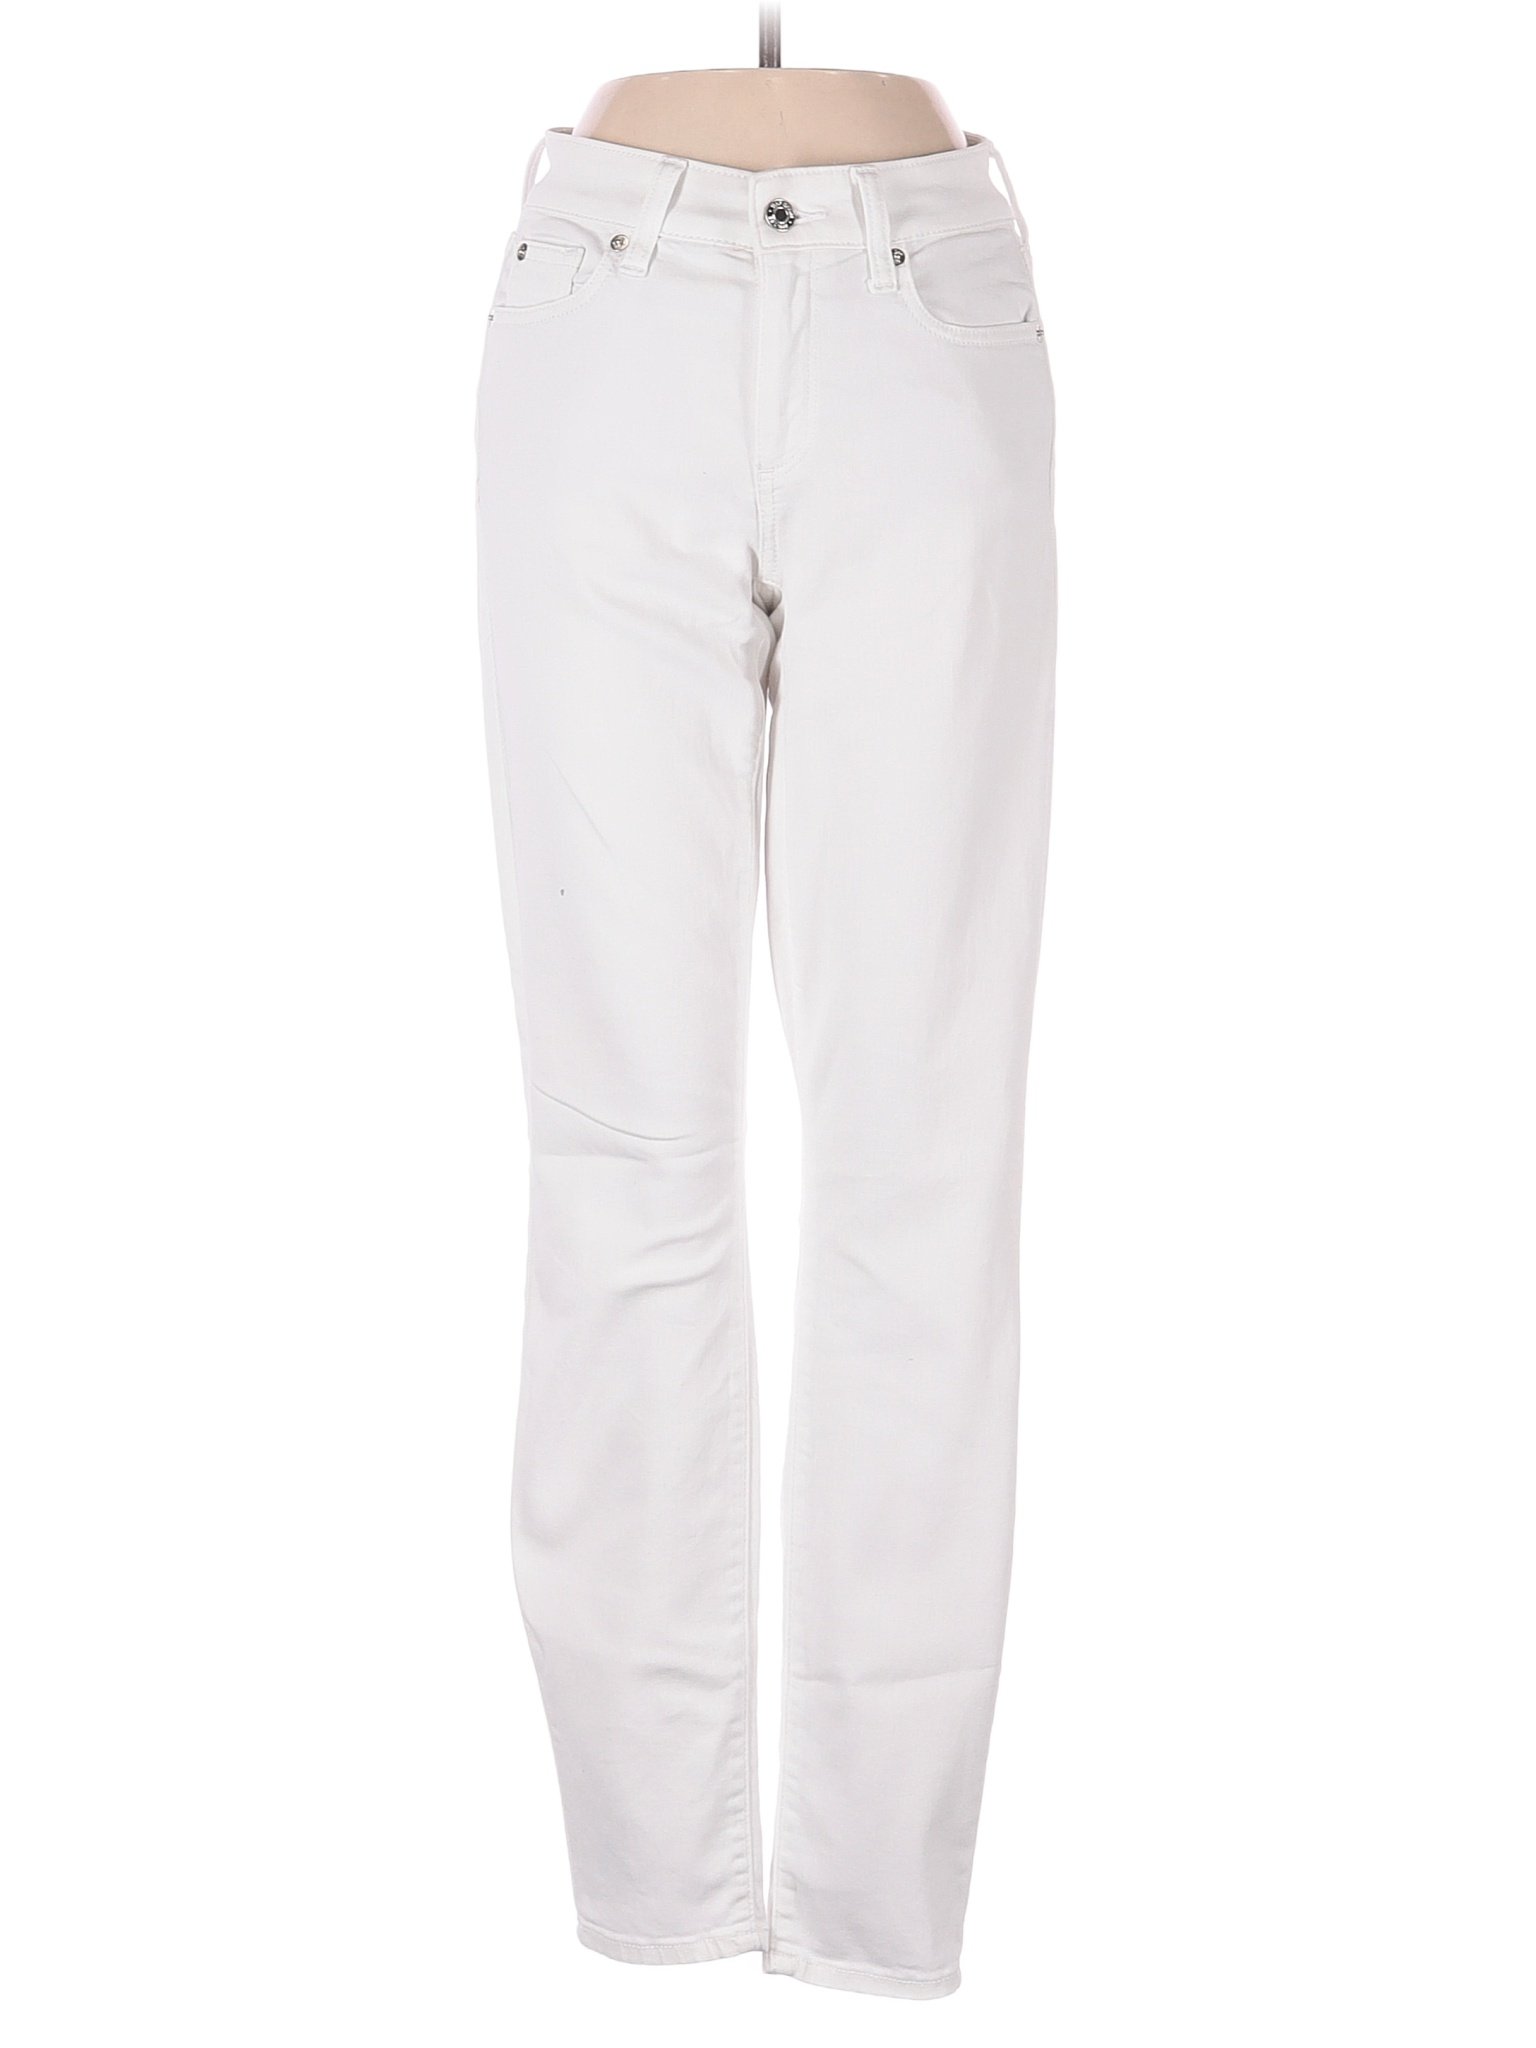 Gap Solid White Jeans 25 Waist - 84% off | thredUP